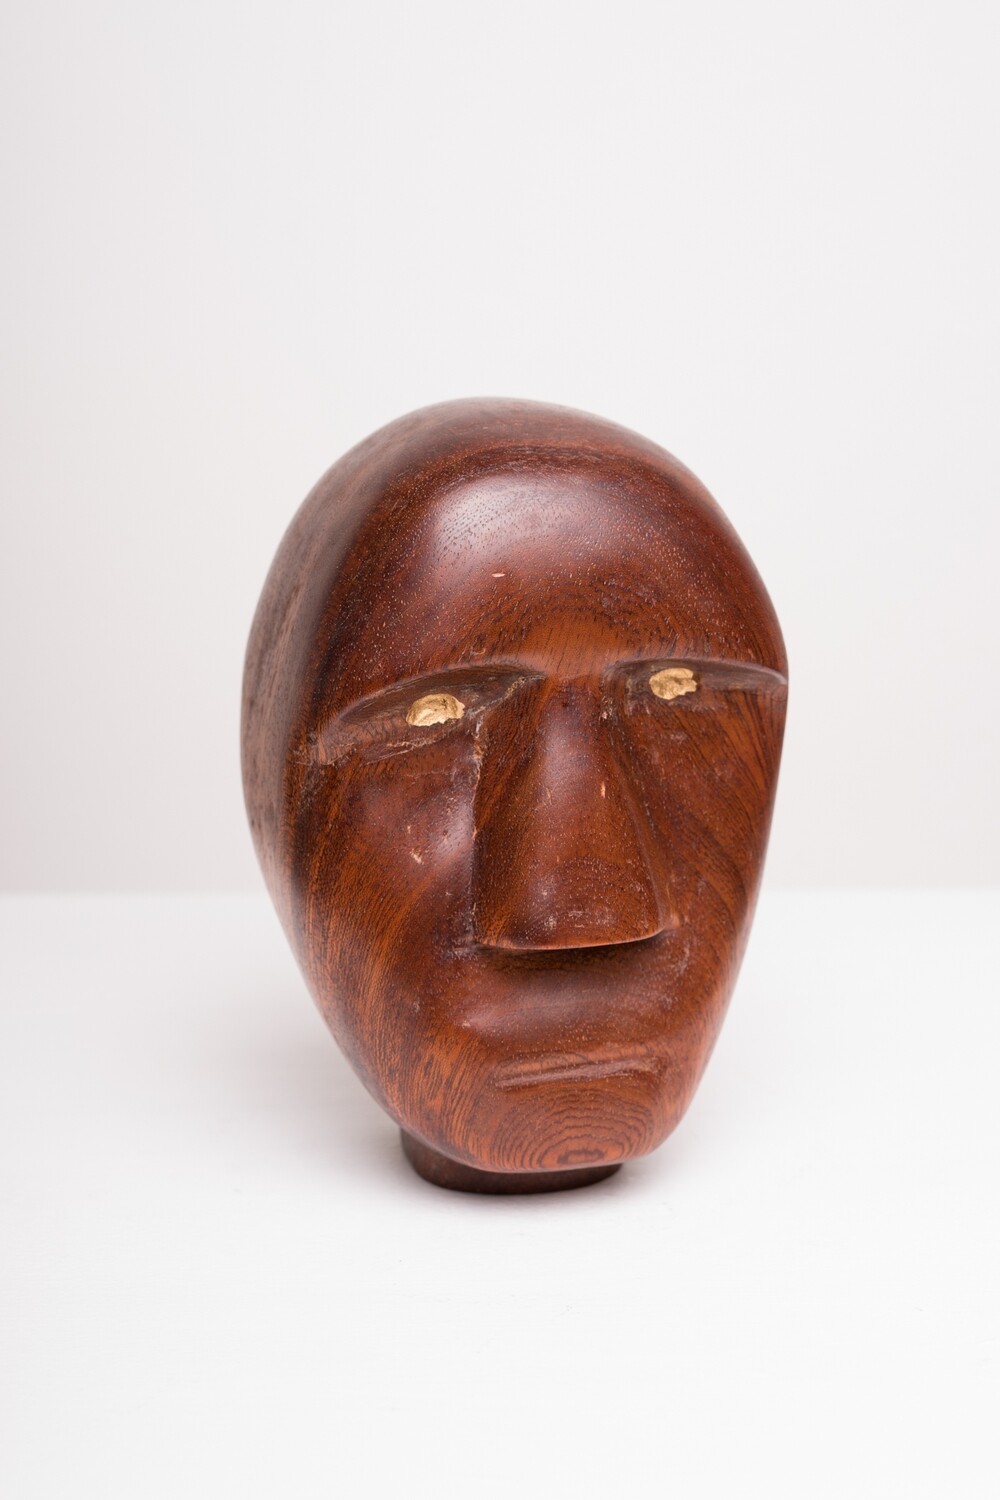 Wooden Head